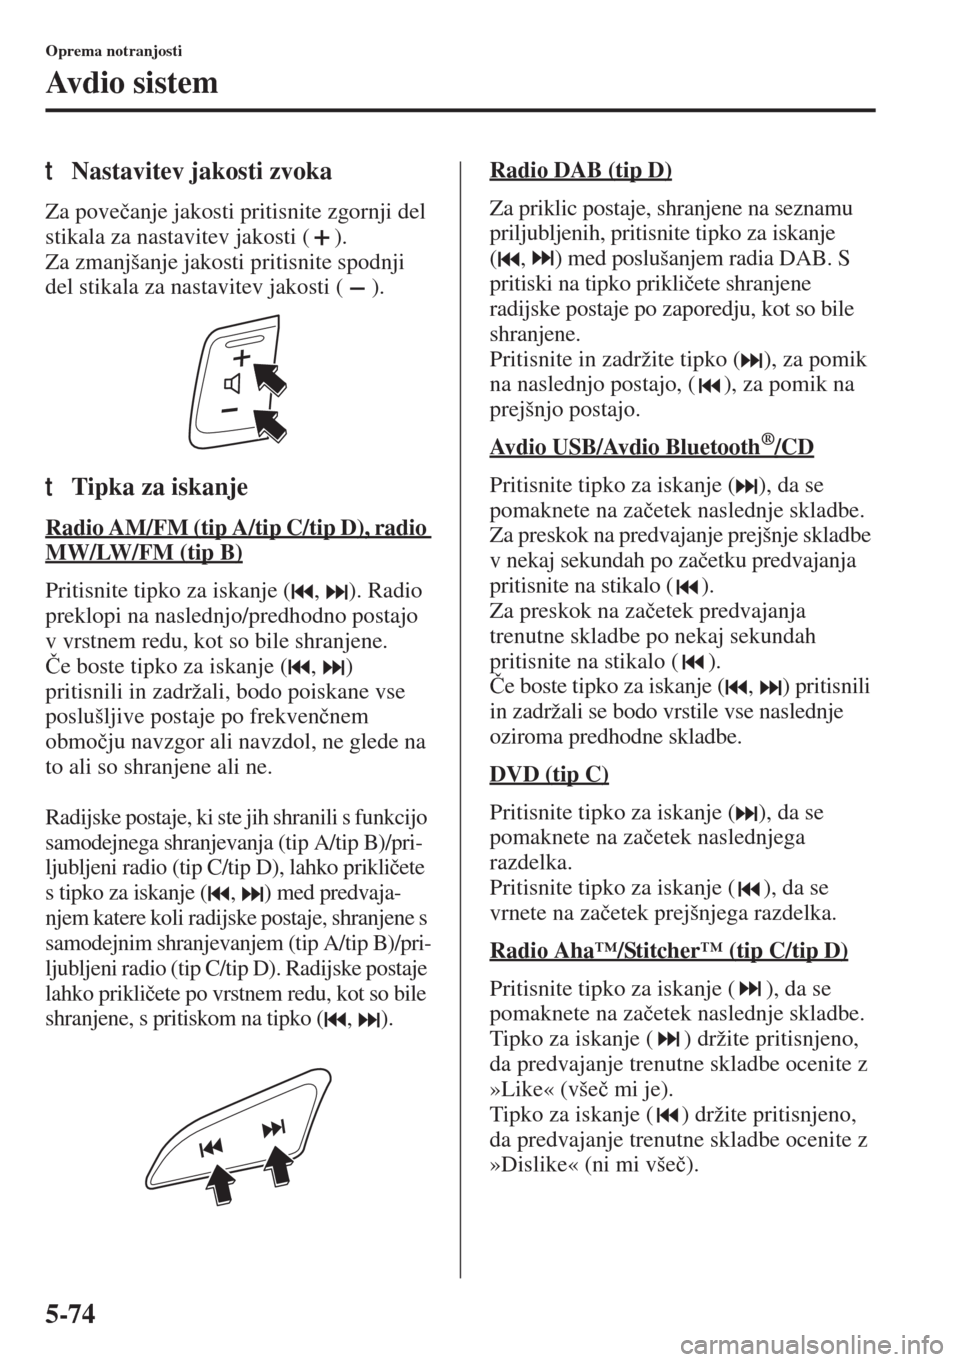 MAZDA MODEL 3 HATCHBACK 2015  Priročnik za lastnika (in Slovenian) 5-74
Oprema notranjosti
Avdio sistem
tNastavitev jakosti zvoka
Za pove�þanje jakosti pritisnite zgornji del 
stikala za nastavitev jakosti ( ).
Za zmanjšanje jakosti pritisnite spodnji 
del stikala 